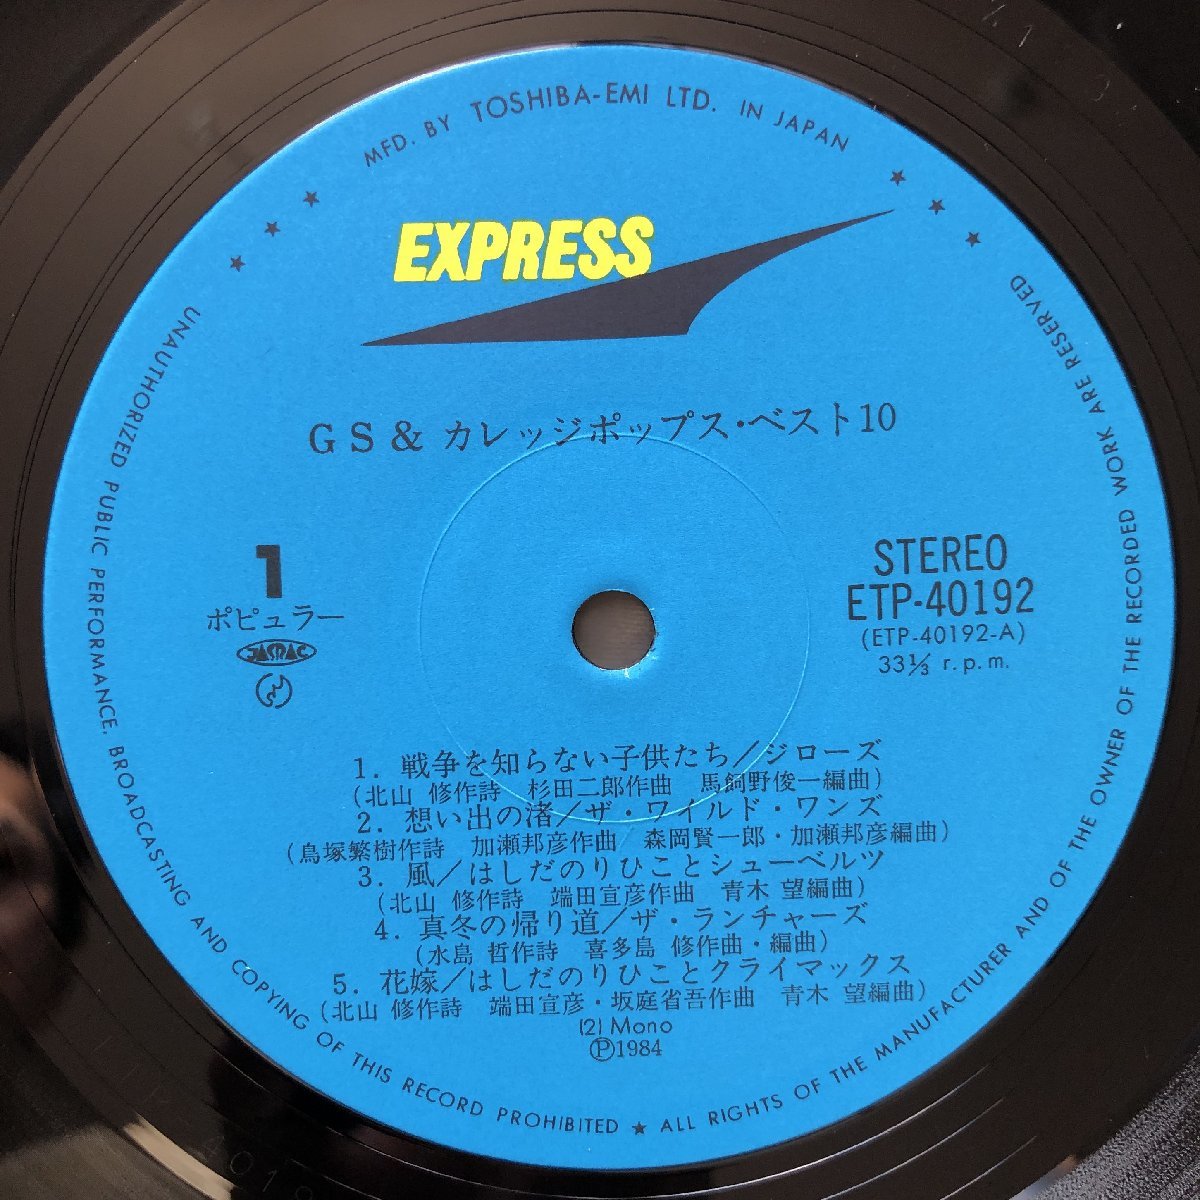 良ジャケ レア盤 1984年 オムニバス LPレコード GS&カレッジポップス・ベスト10 帯付 モップス ザ・ランチャーズ_画像8